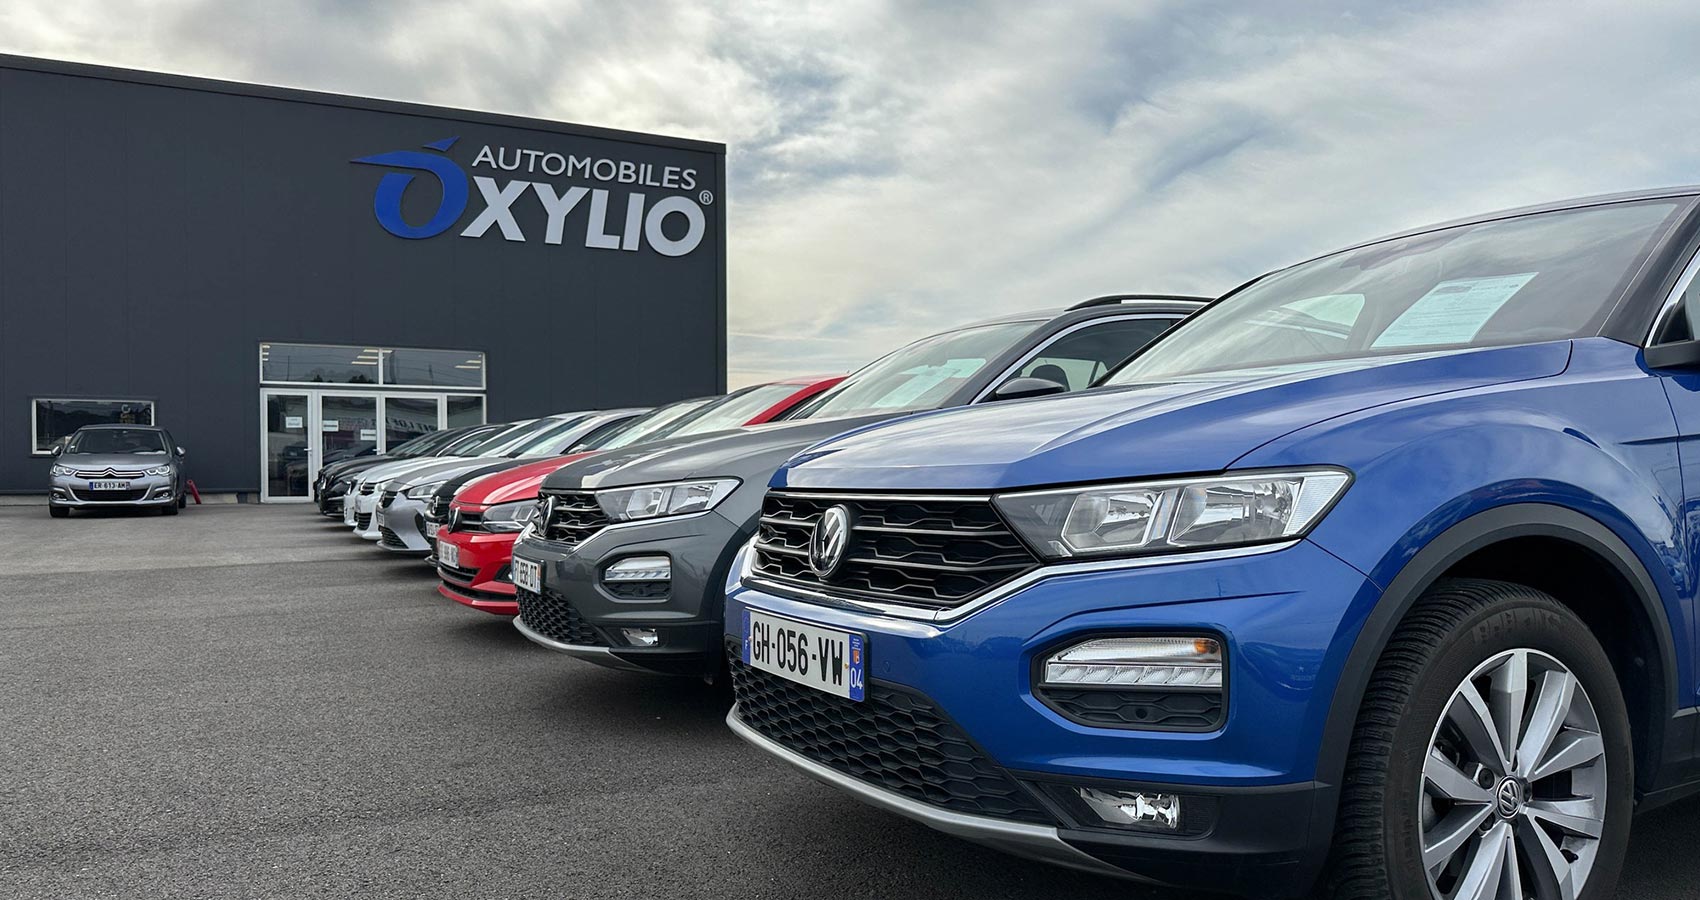 Oxylio Automobiles c’est 4 concessions en région Occitanie